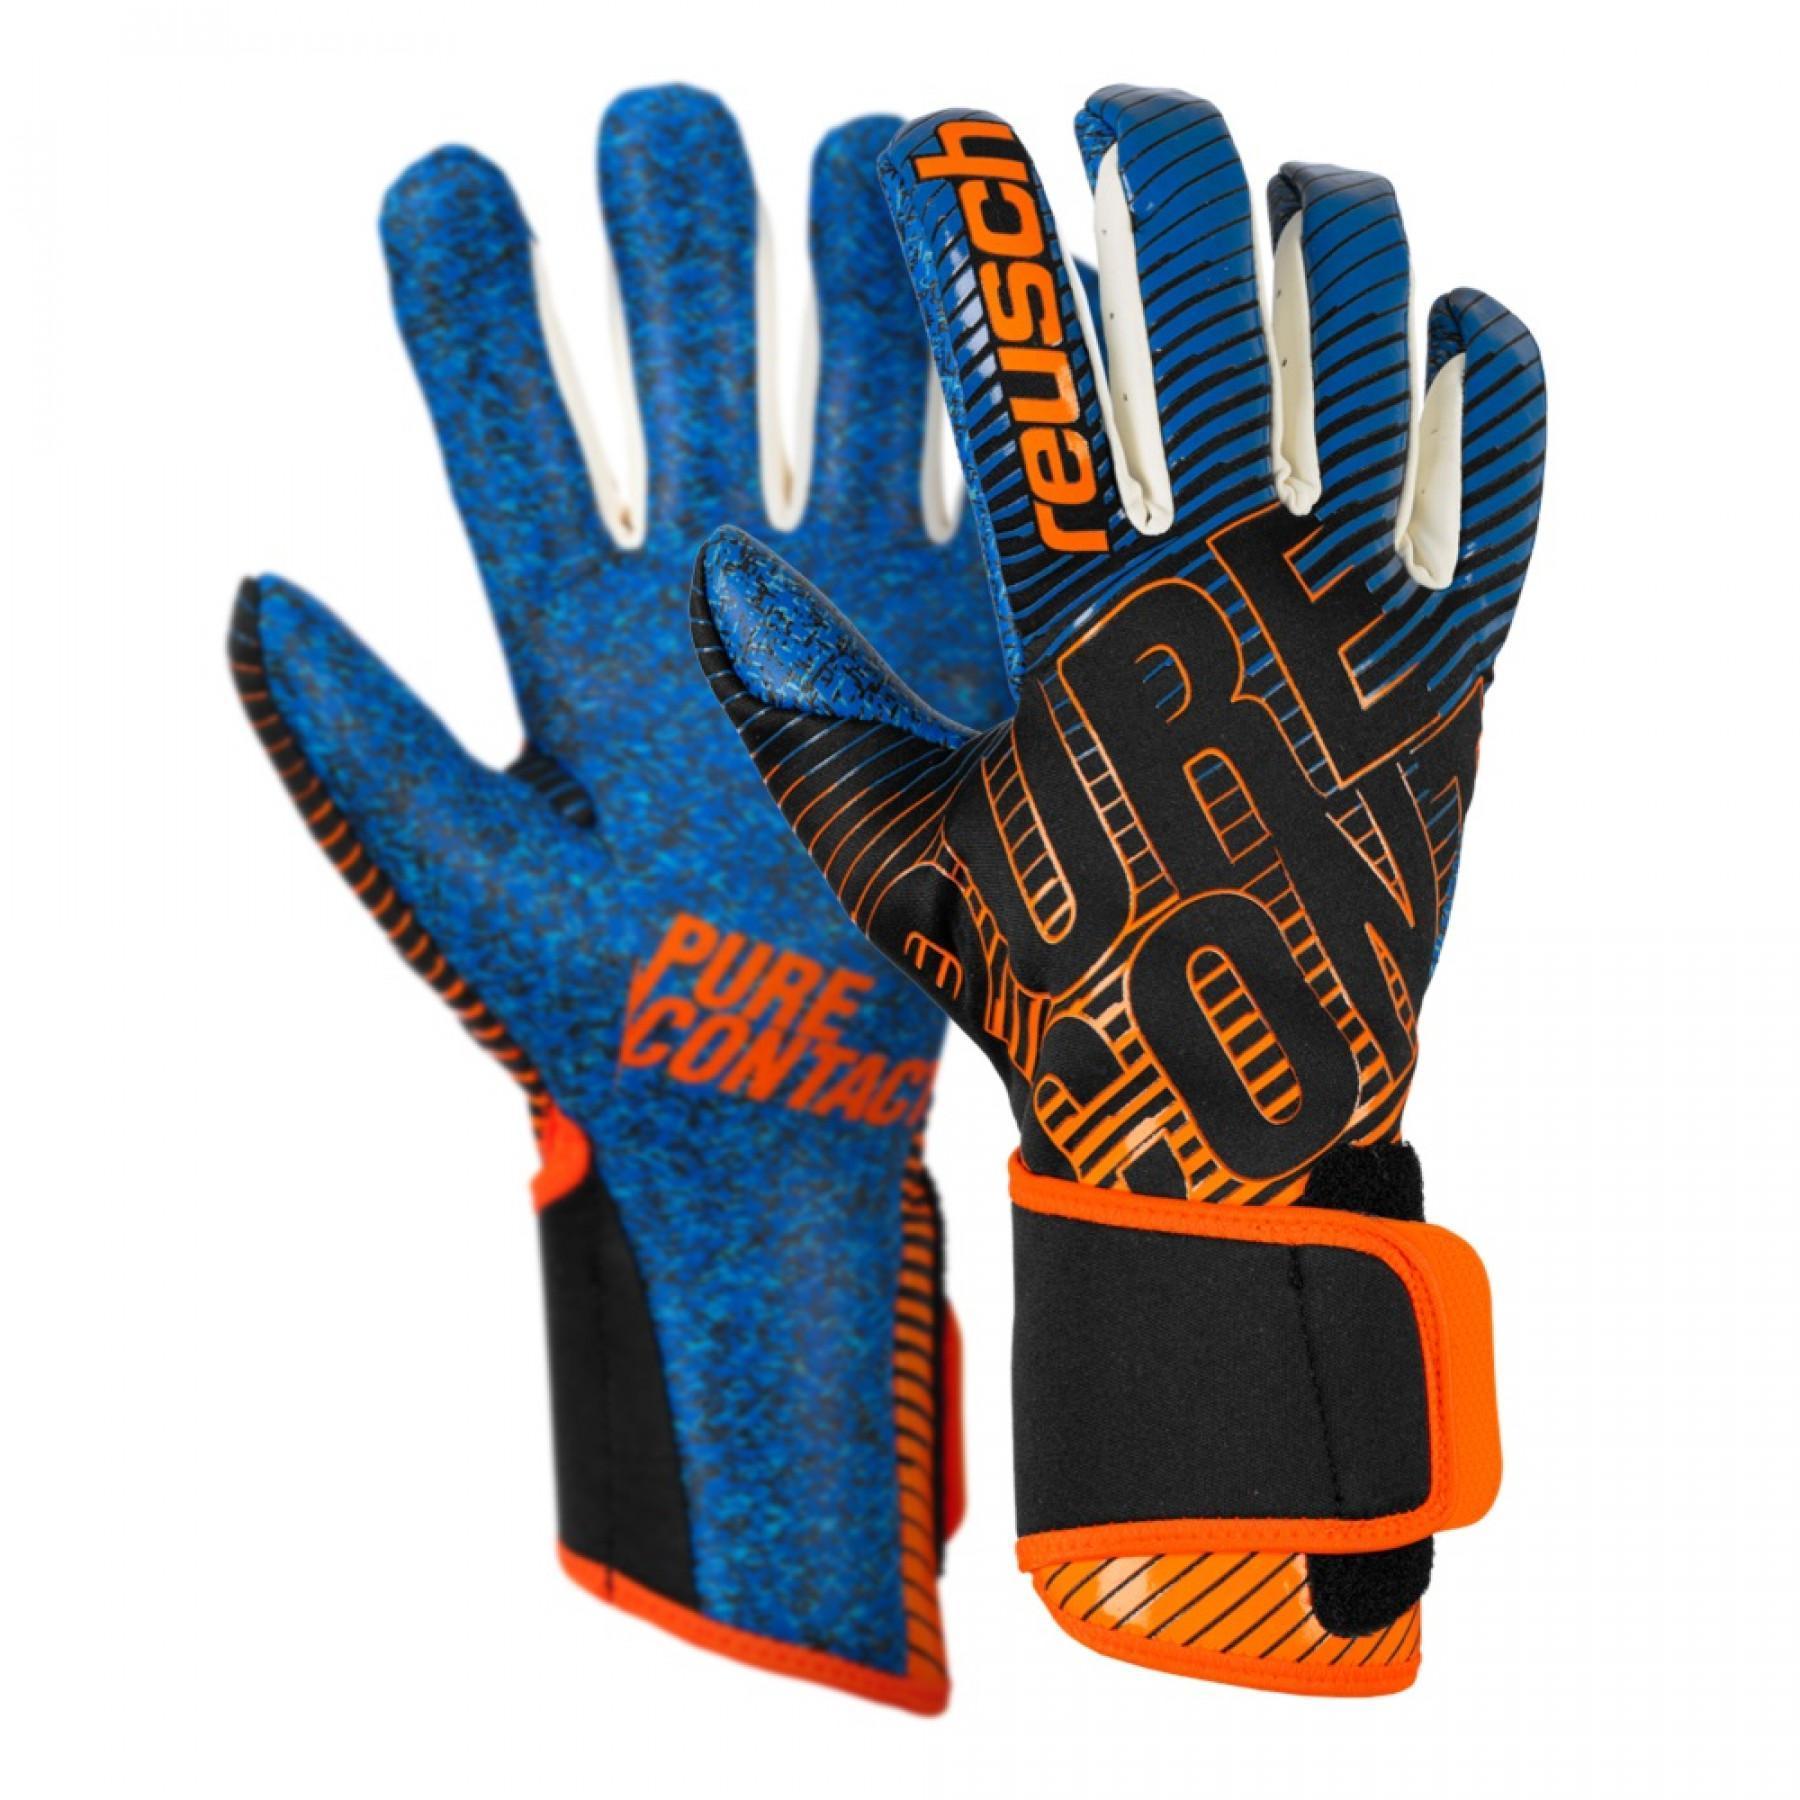 Goalkeeper gloves Reusch Pure Contact 3 G3 Fusion